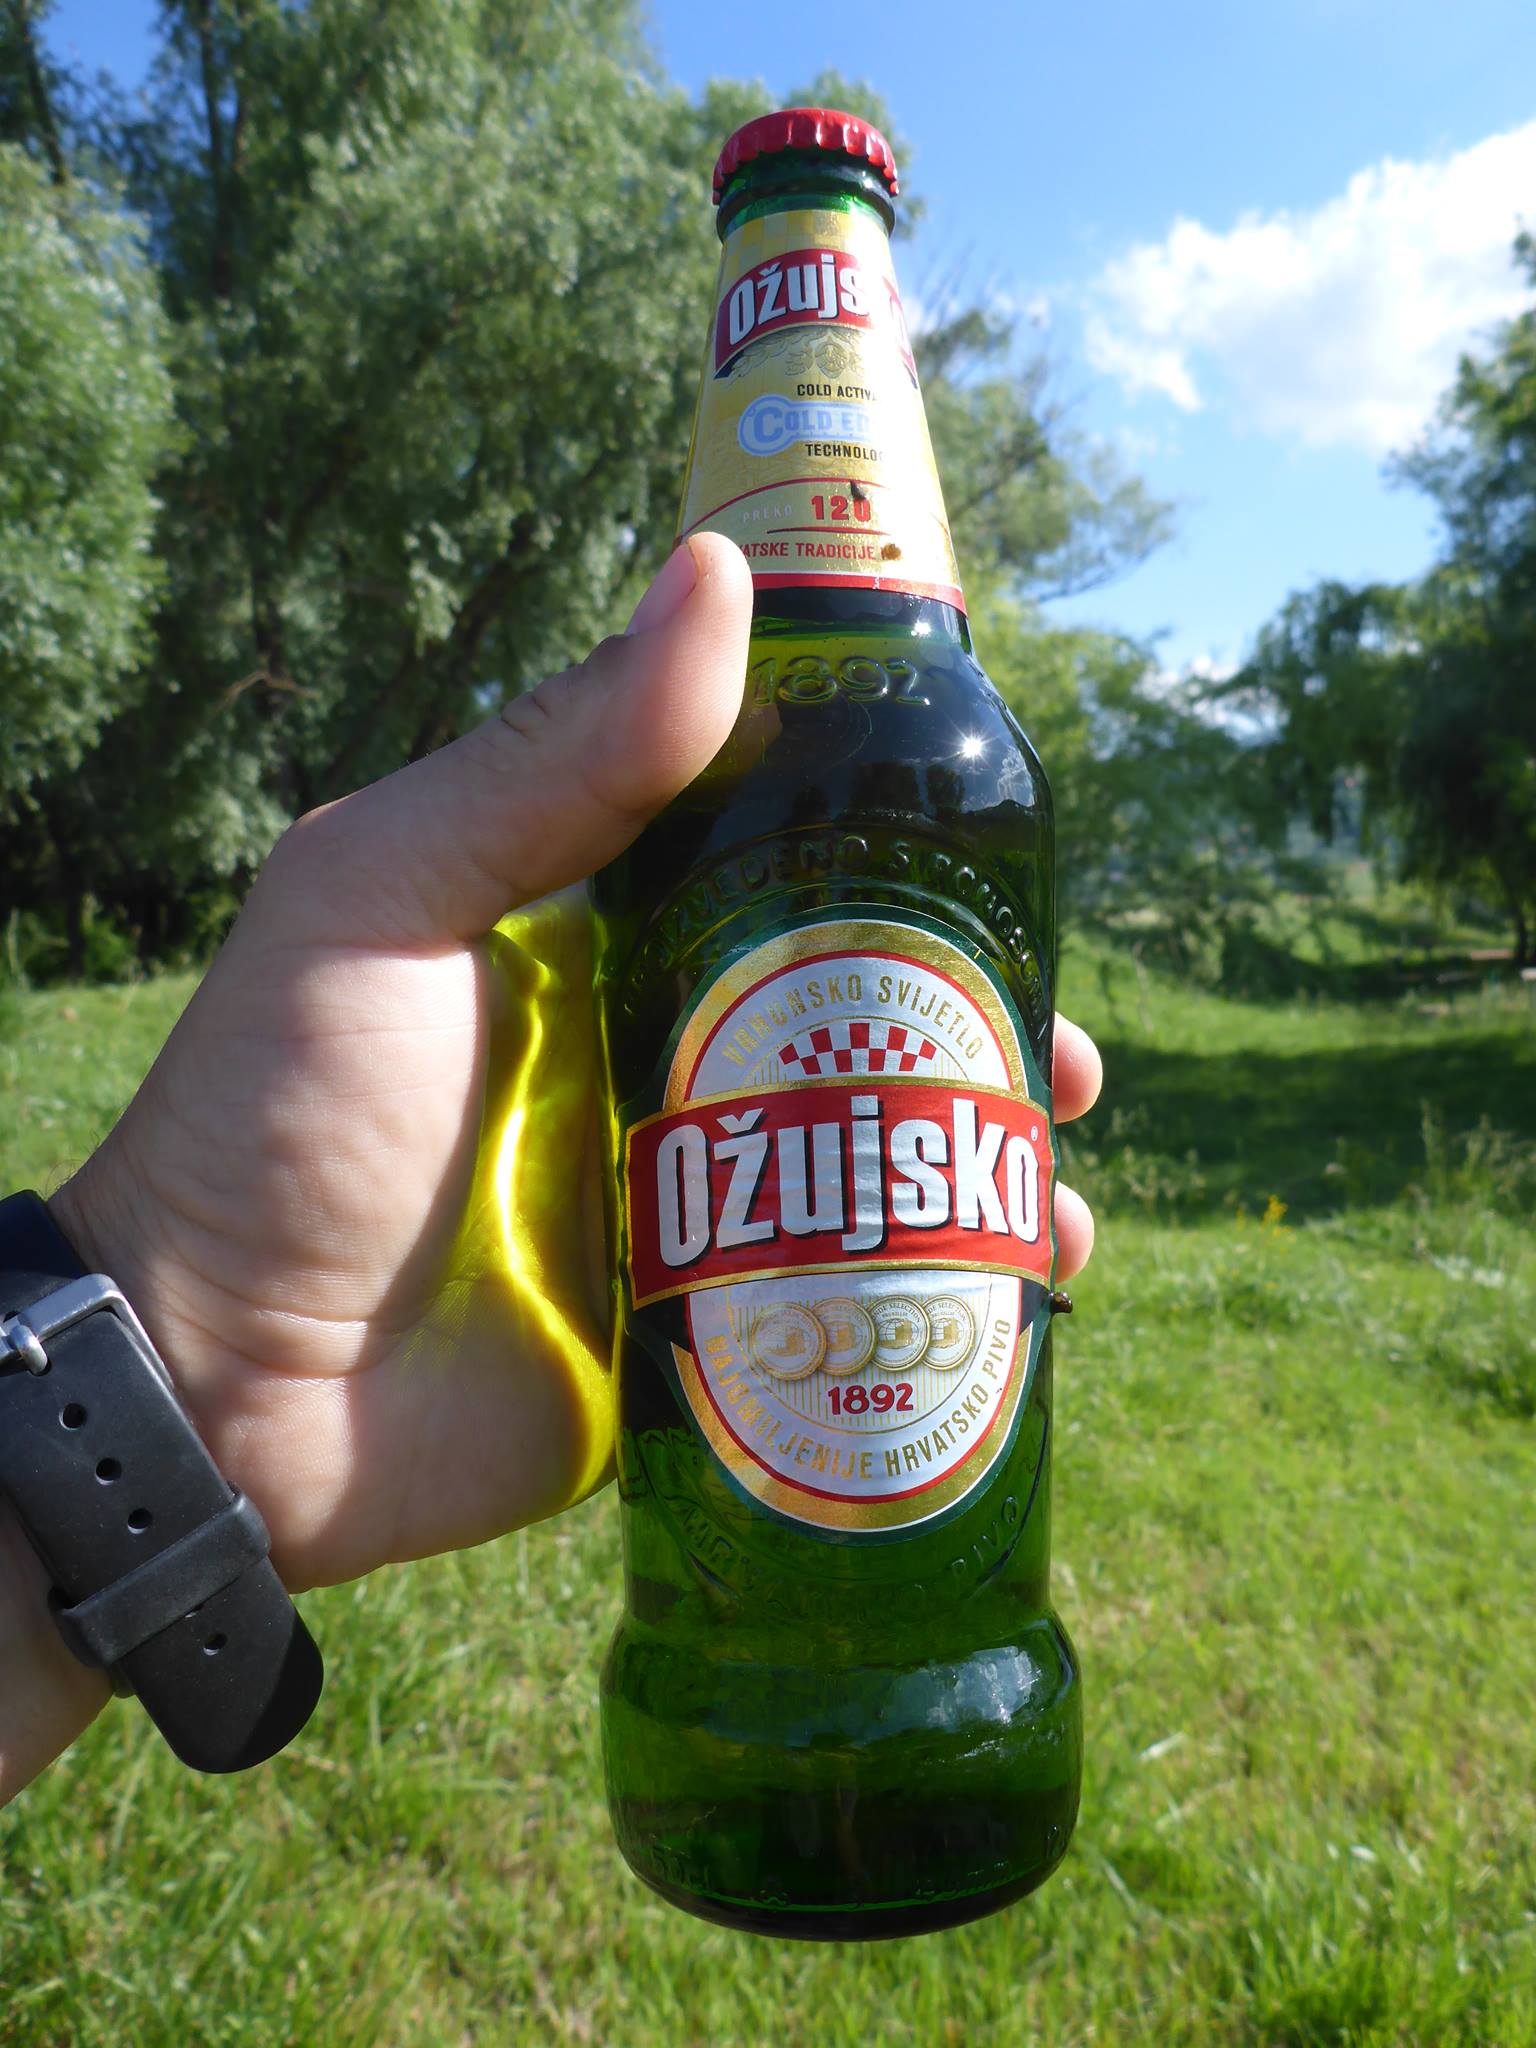 Une rencontre avec quelques croates qui m'offrent une bonne bière du pays